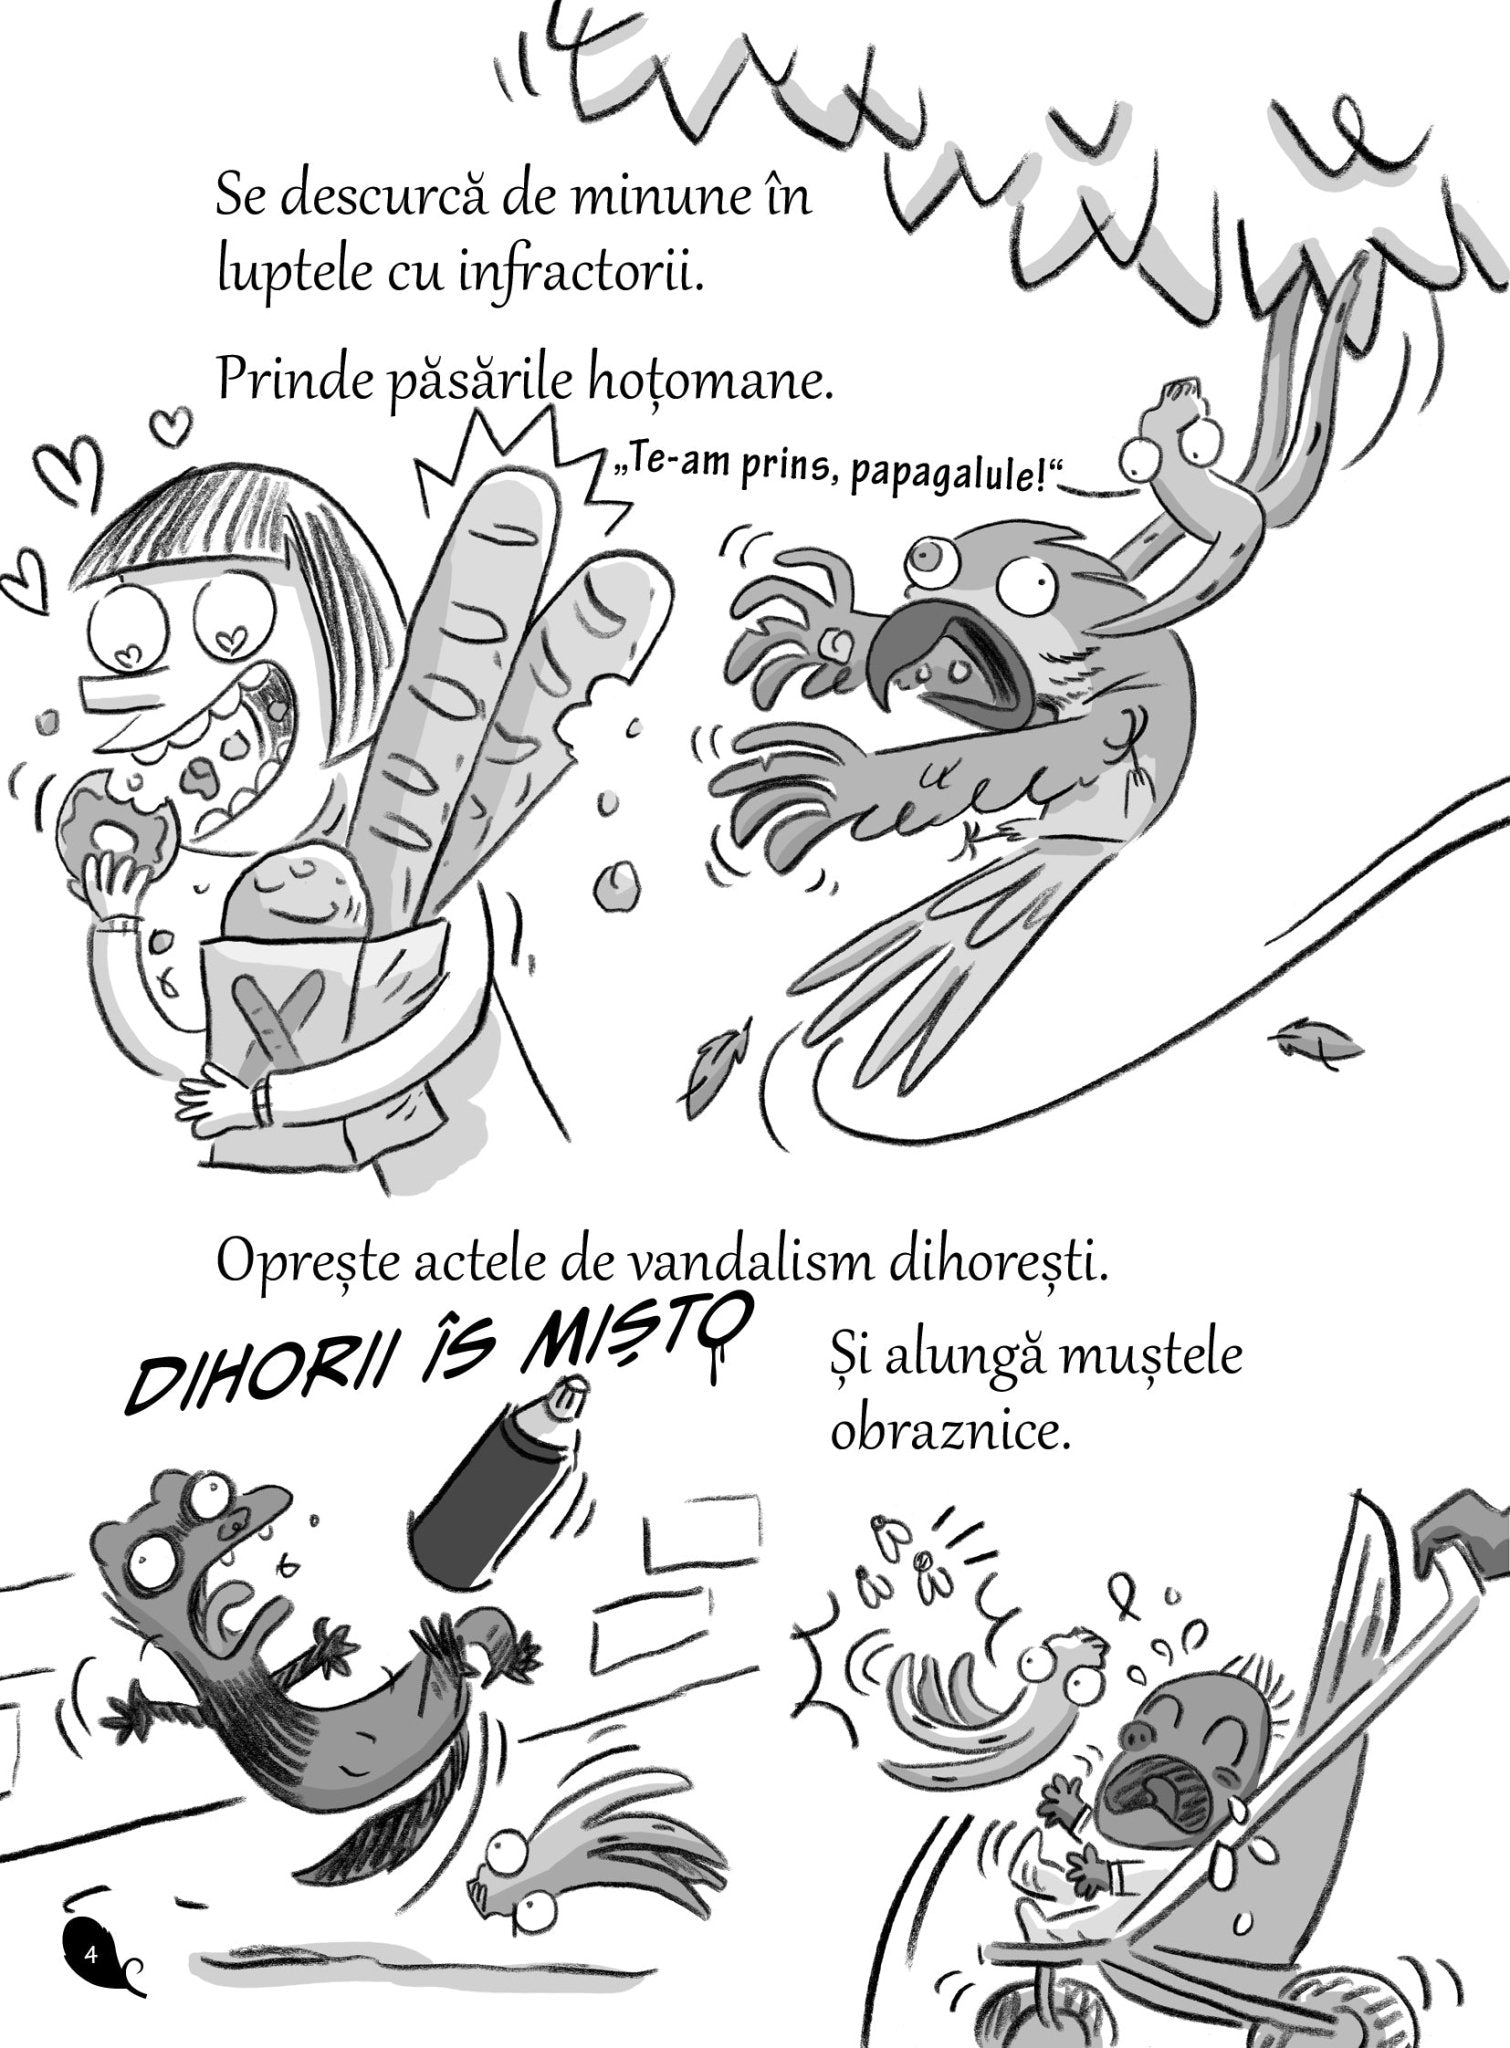 Adevaratii Porumbei intra in paine (vol.VI) - Publisol.ro